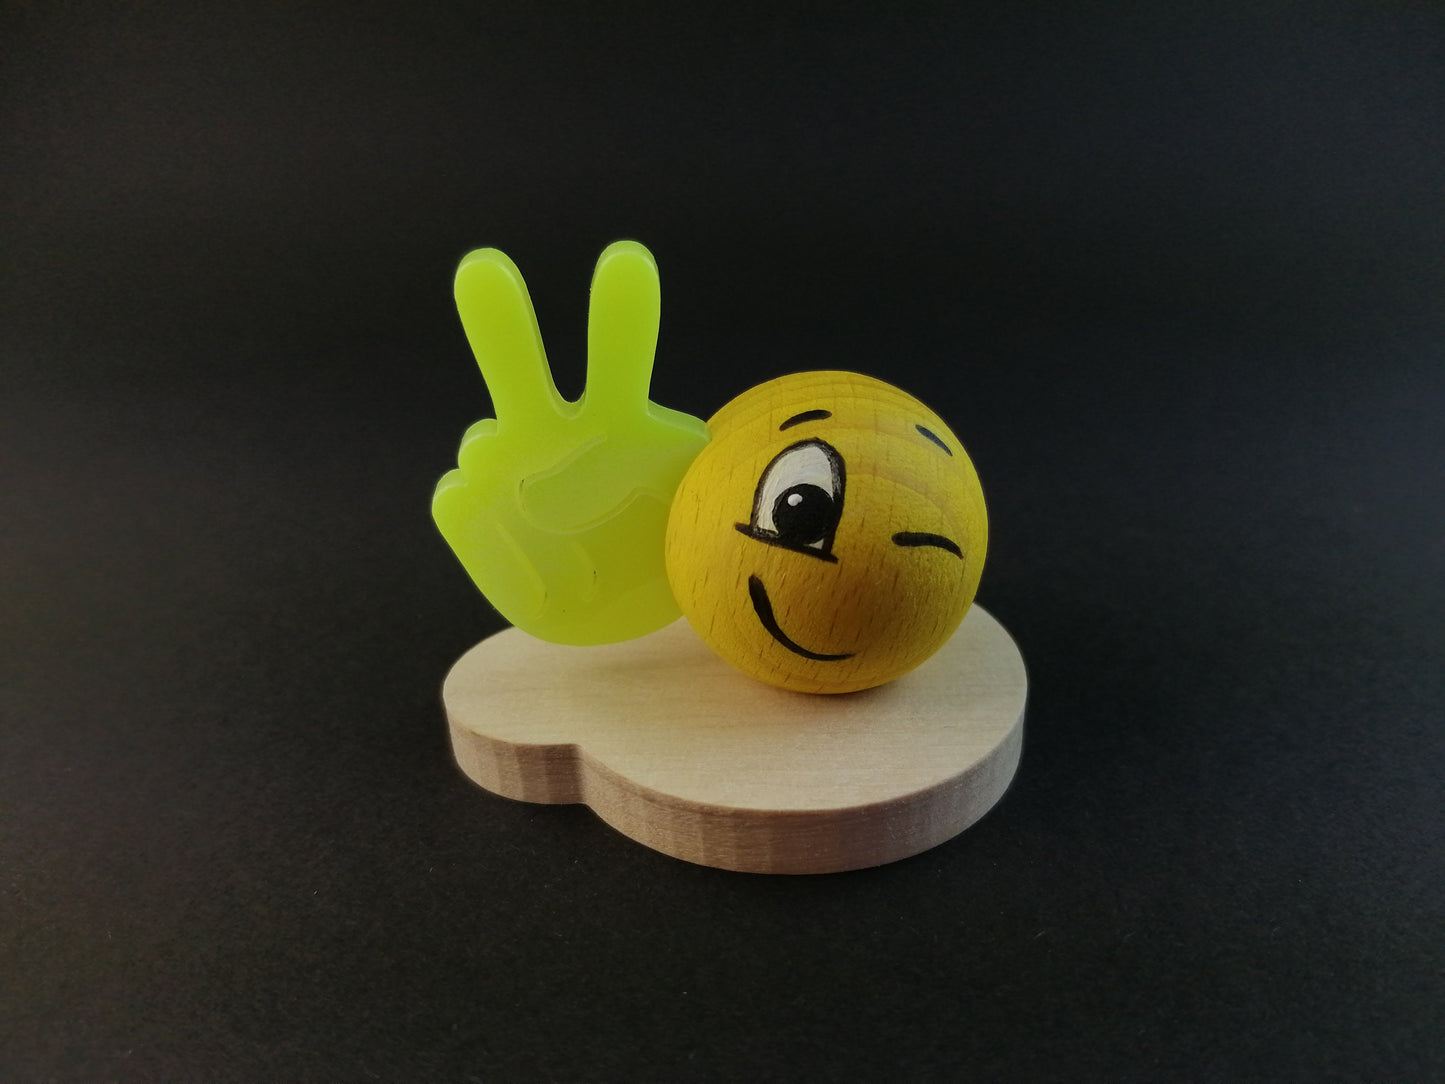 Miniatur Figur Holz "Smilinka" Peace Sammelfigur